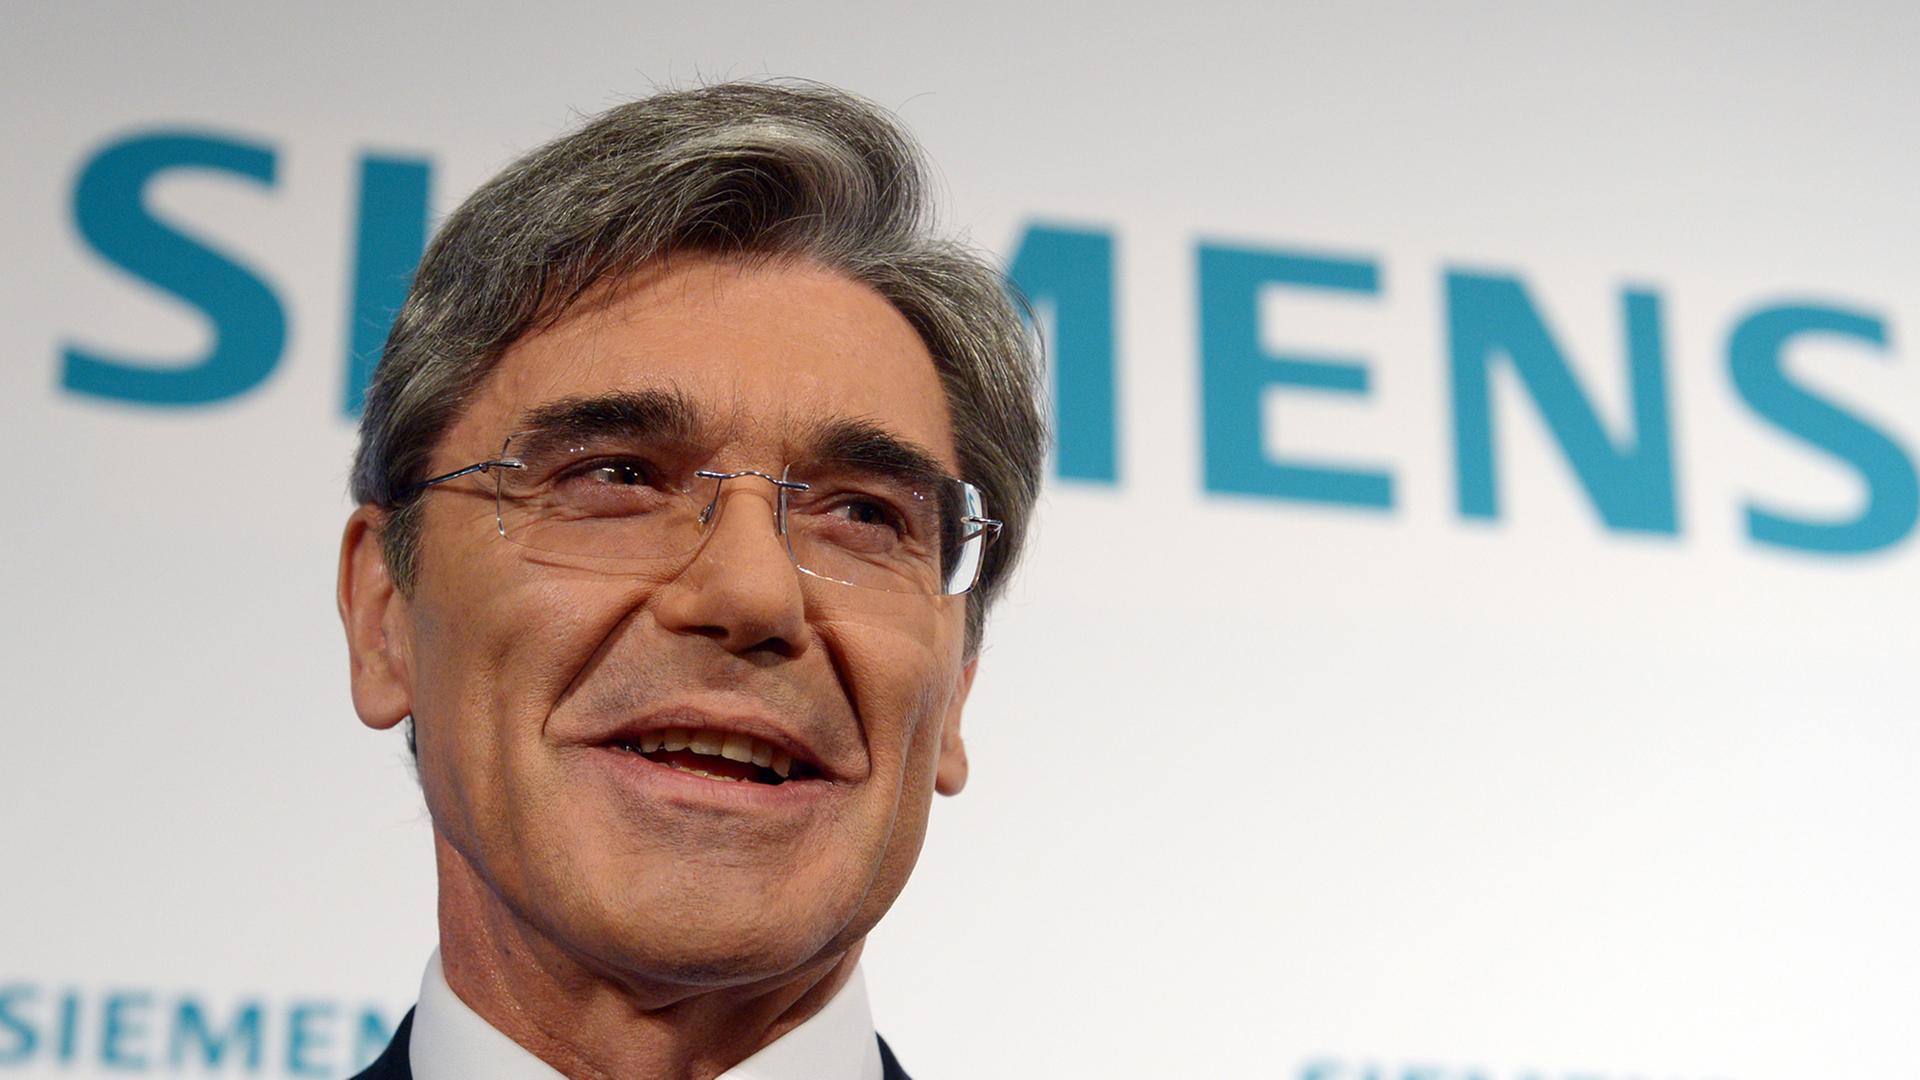 Der Vorstandsvorsitzende der Siemens AG, Joe Kaeser, vor der Siemens Halbjahres-Pressekonferenz am 07.05.2014 in Berlin.